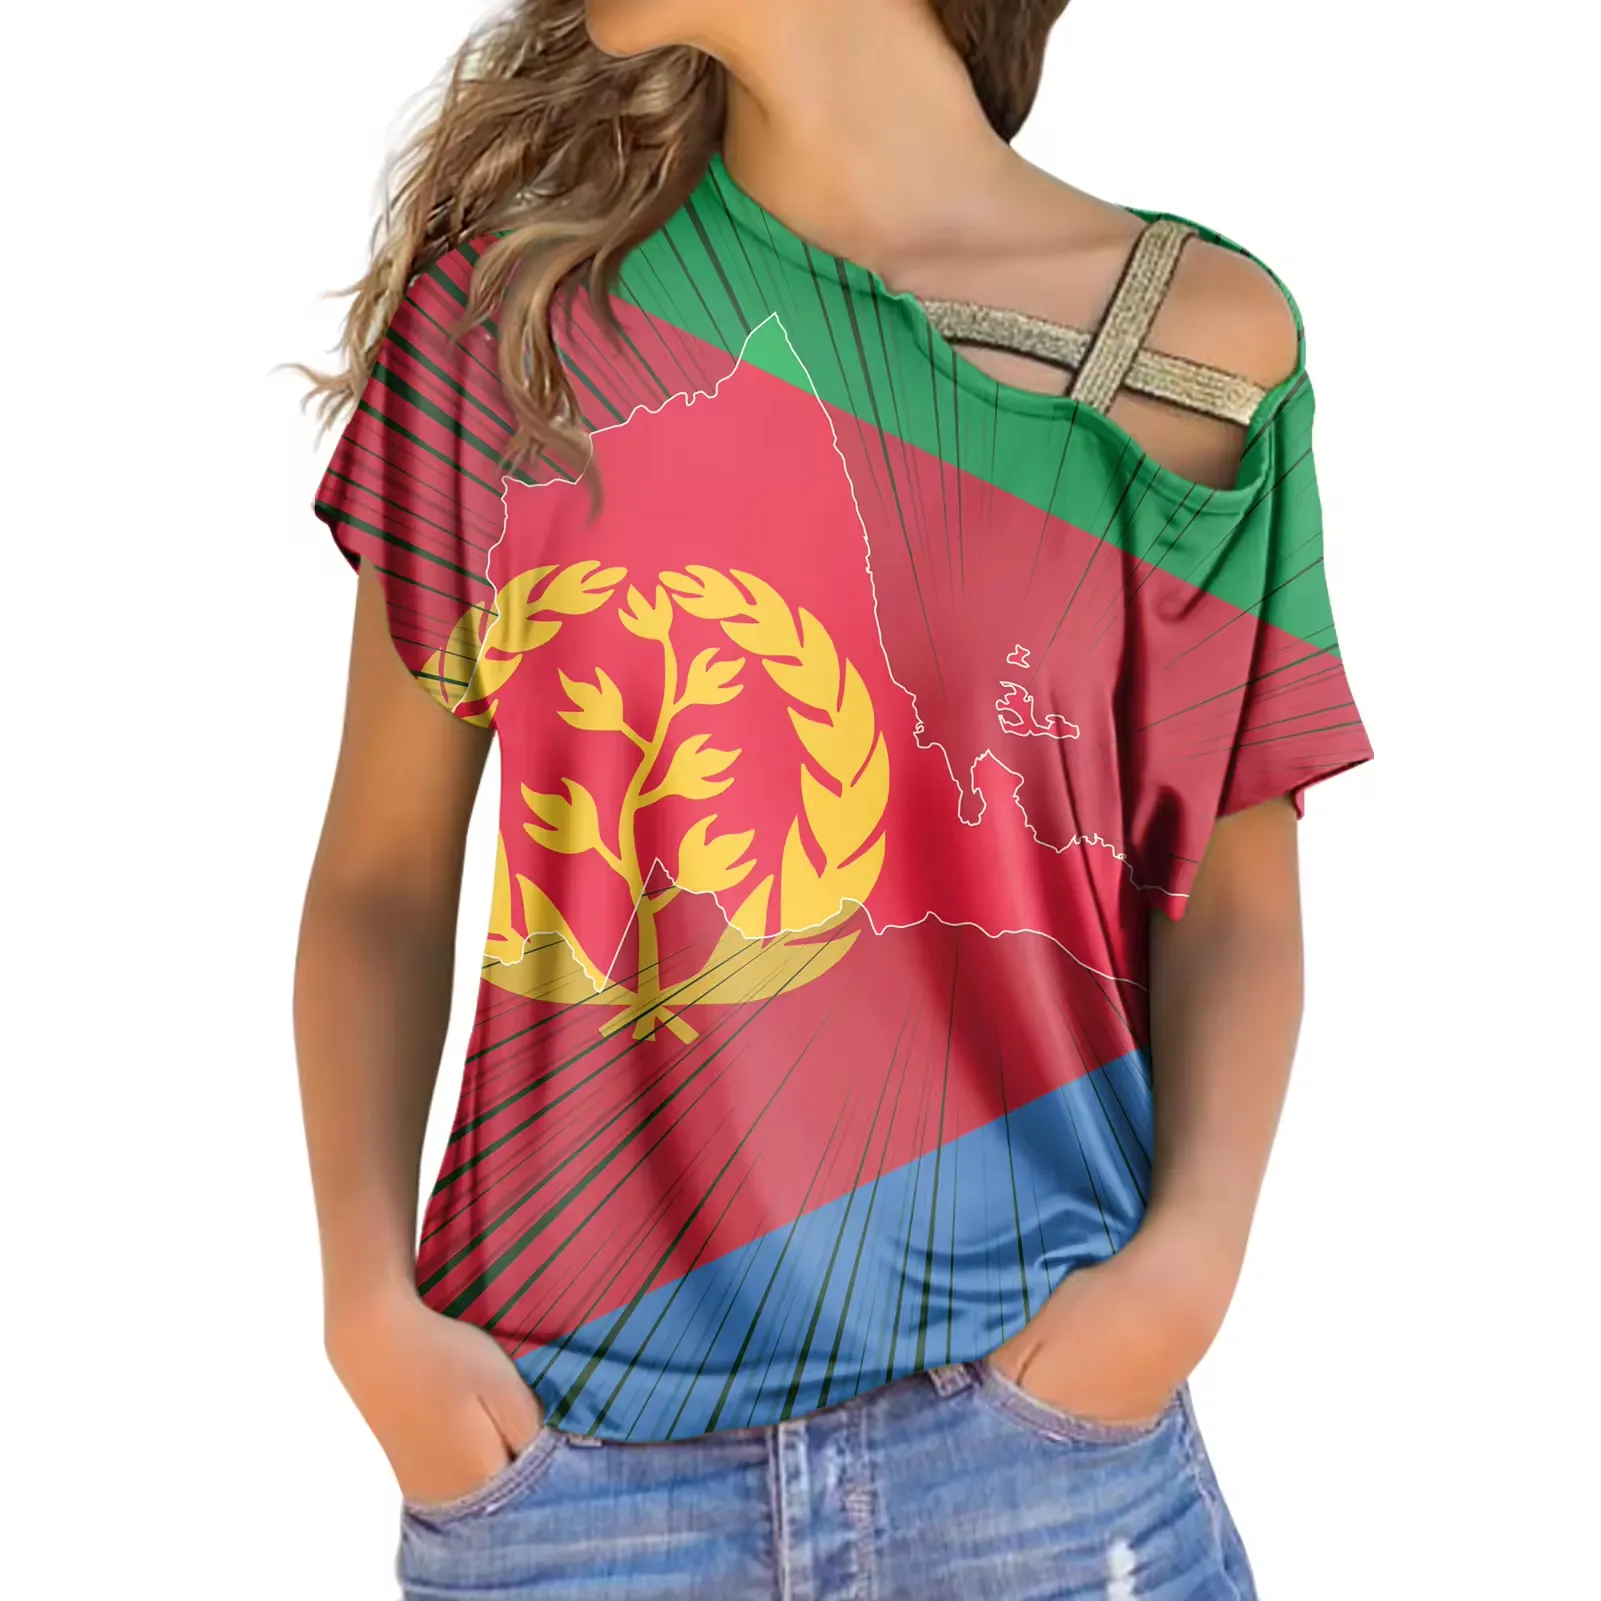 Großhandel individuelles Logo Damenoberteile personalisierte T-Shirts eritreische Damenhemden trägerlose T-Shirts bedruckte Oberteile